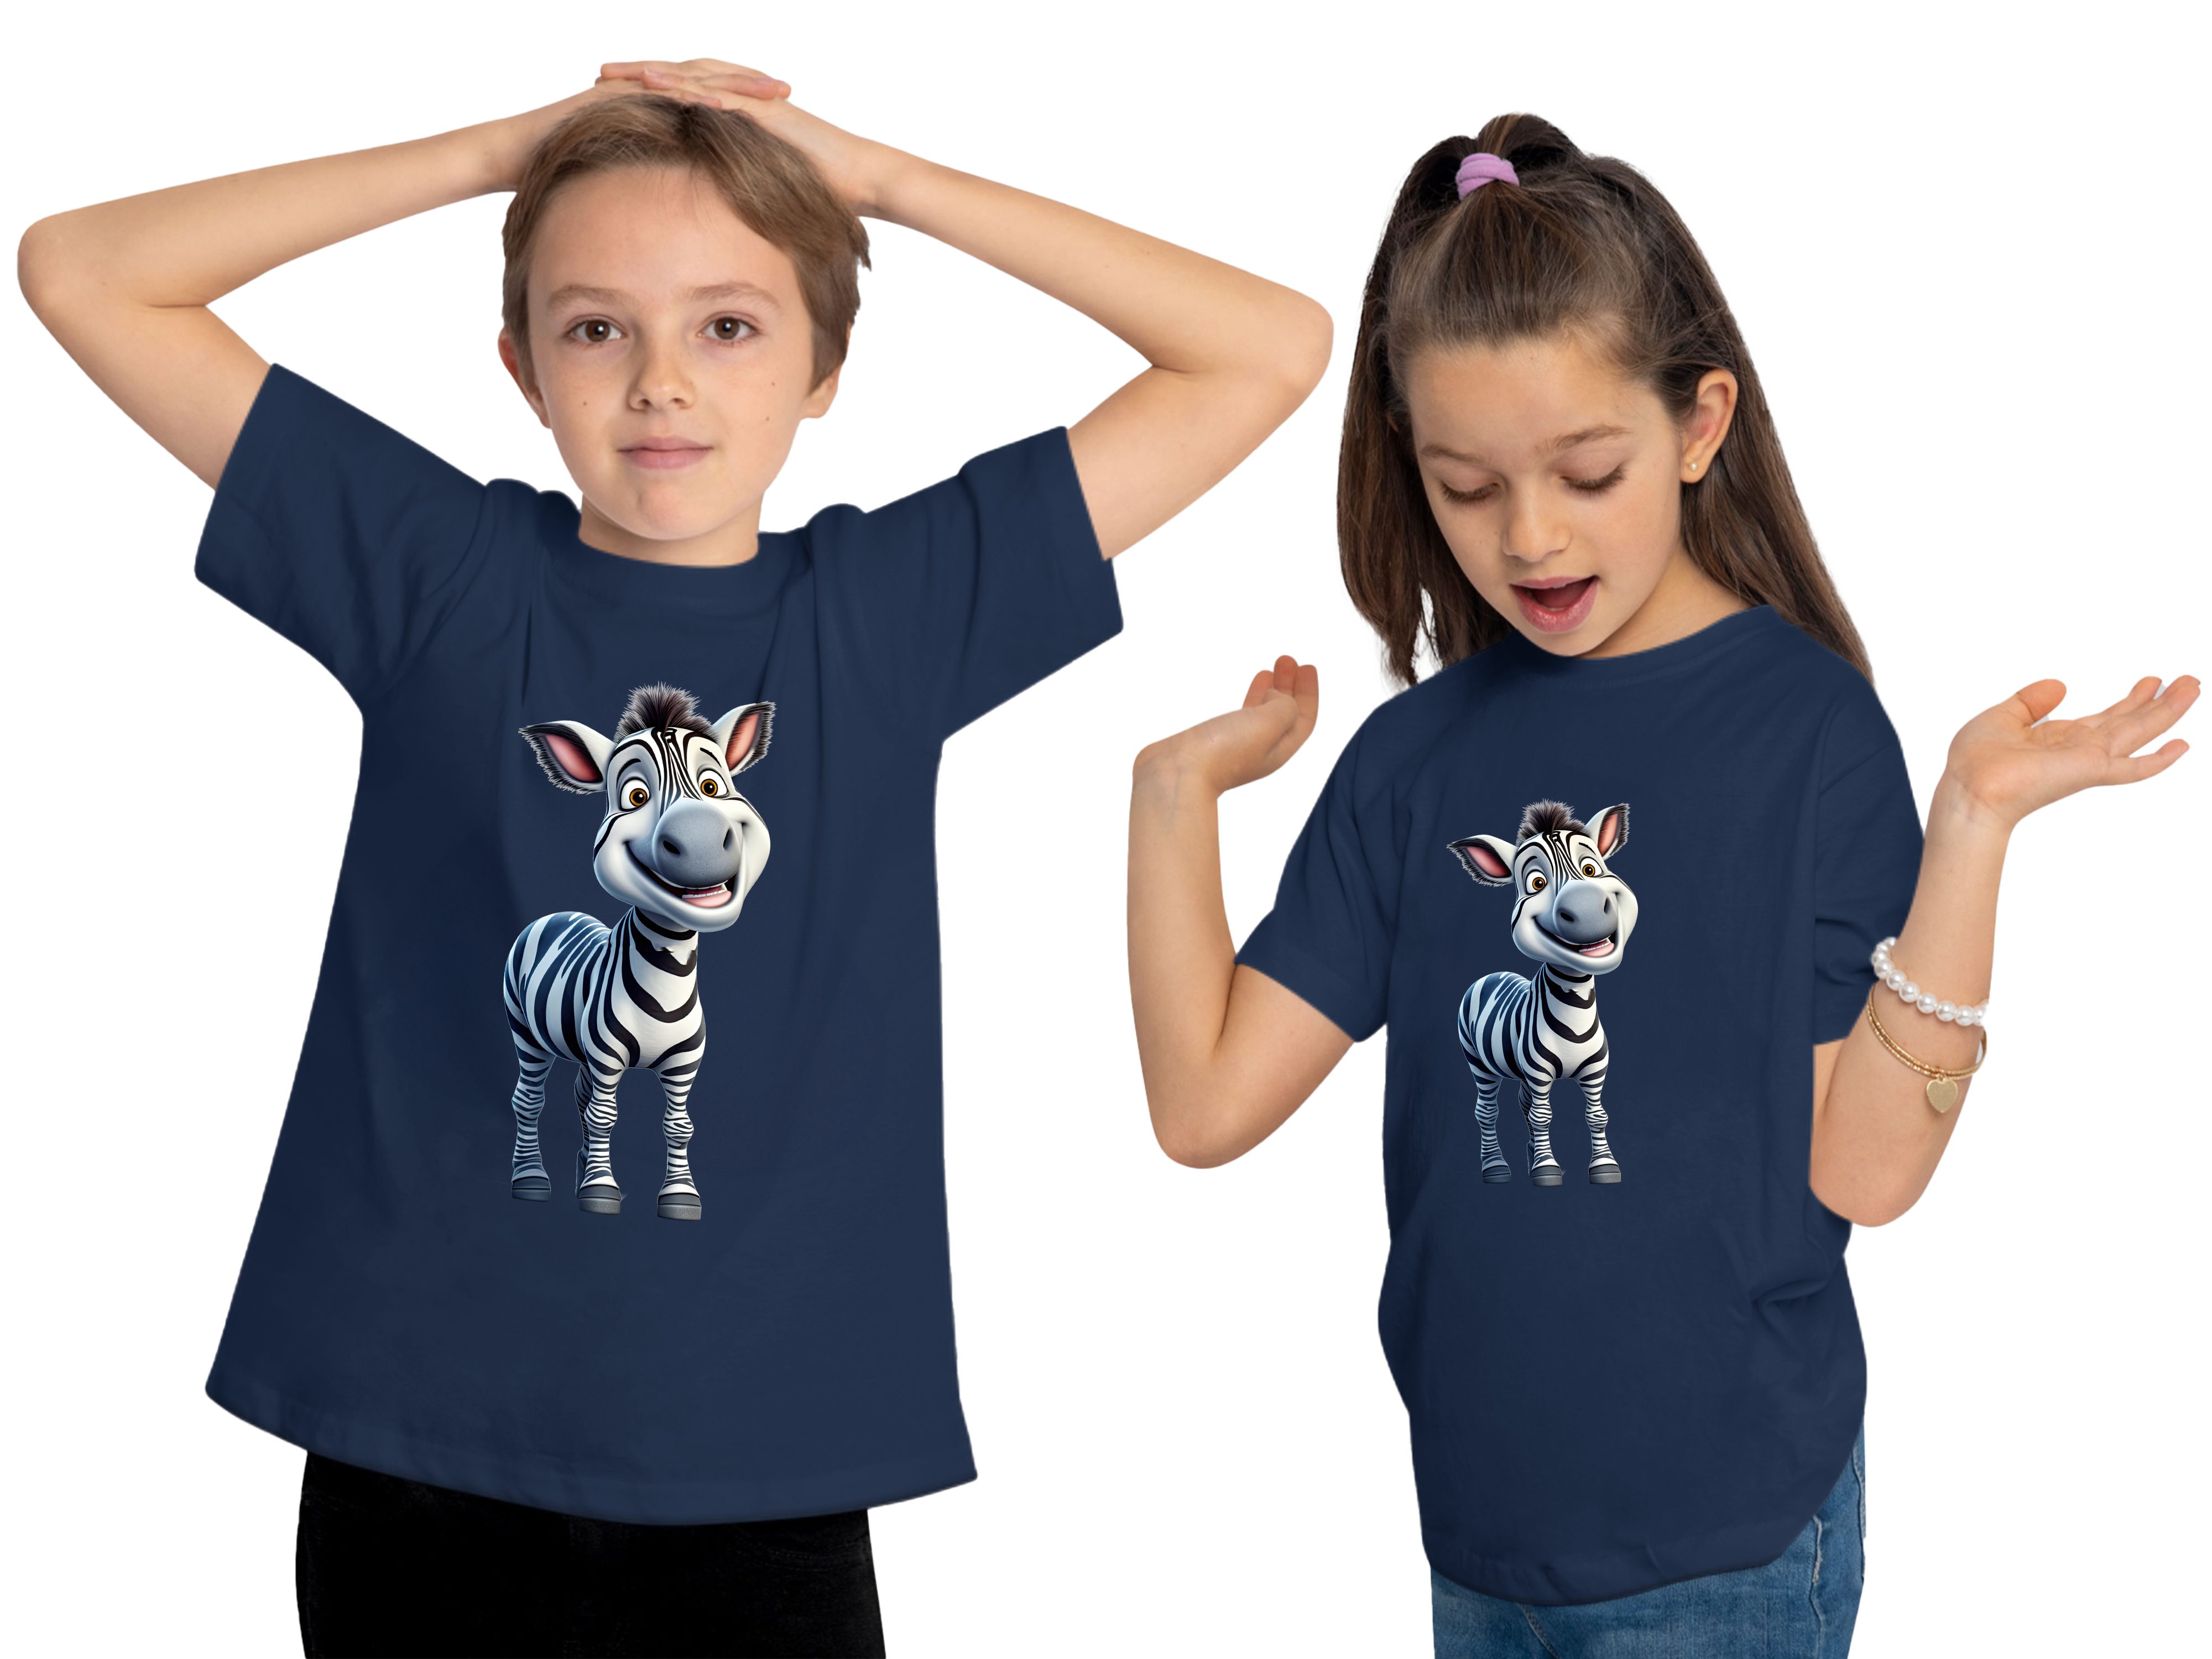 MyDesign24 T-Shirt Kinder Wildtier Print navy Baby Shirt Aufdruck, Zebra i280 mit bedruckt Baumwollshirt blau 